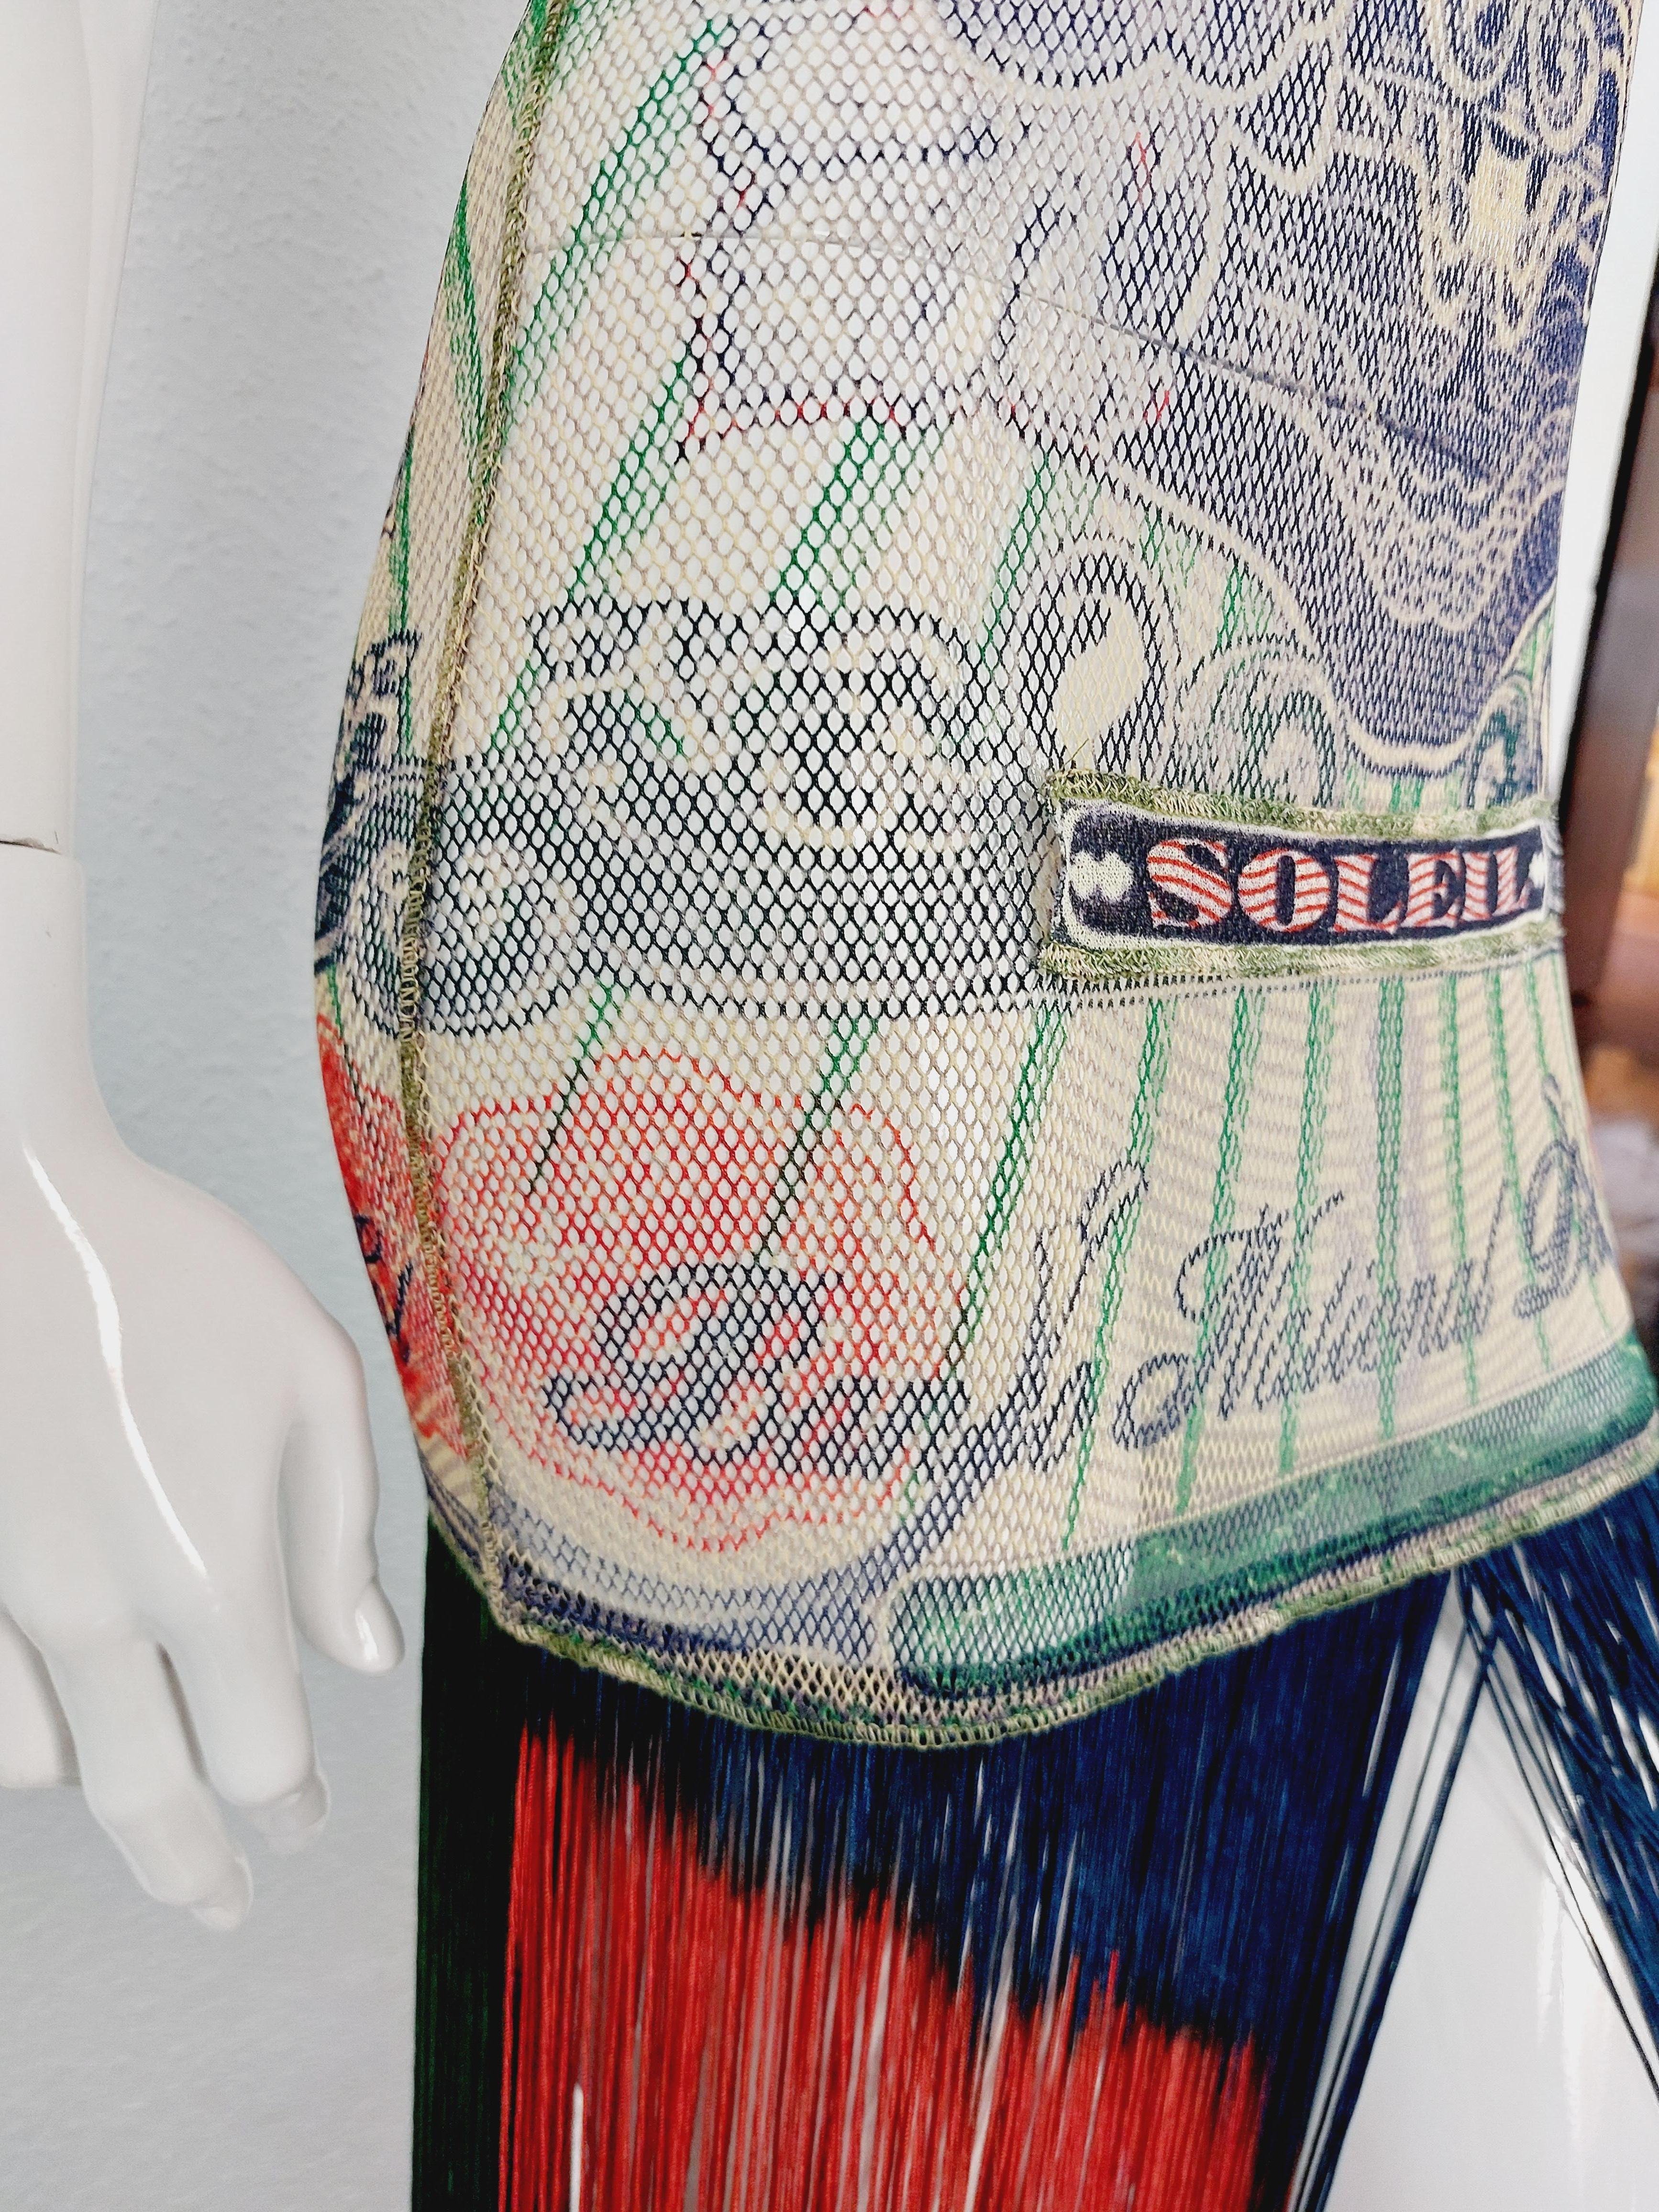 Jean Paul Gaultier Banknote Runway Money Net Mesh Fringe Dollar 1994 Dress For Sale 11